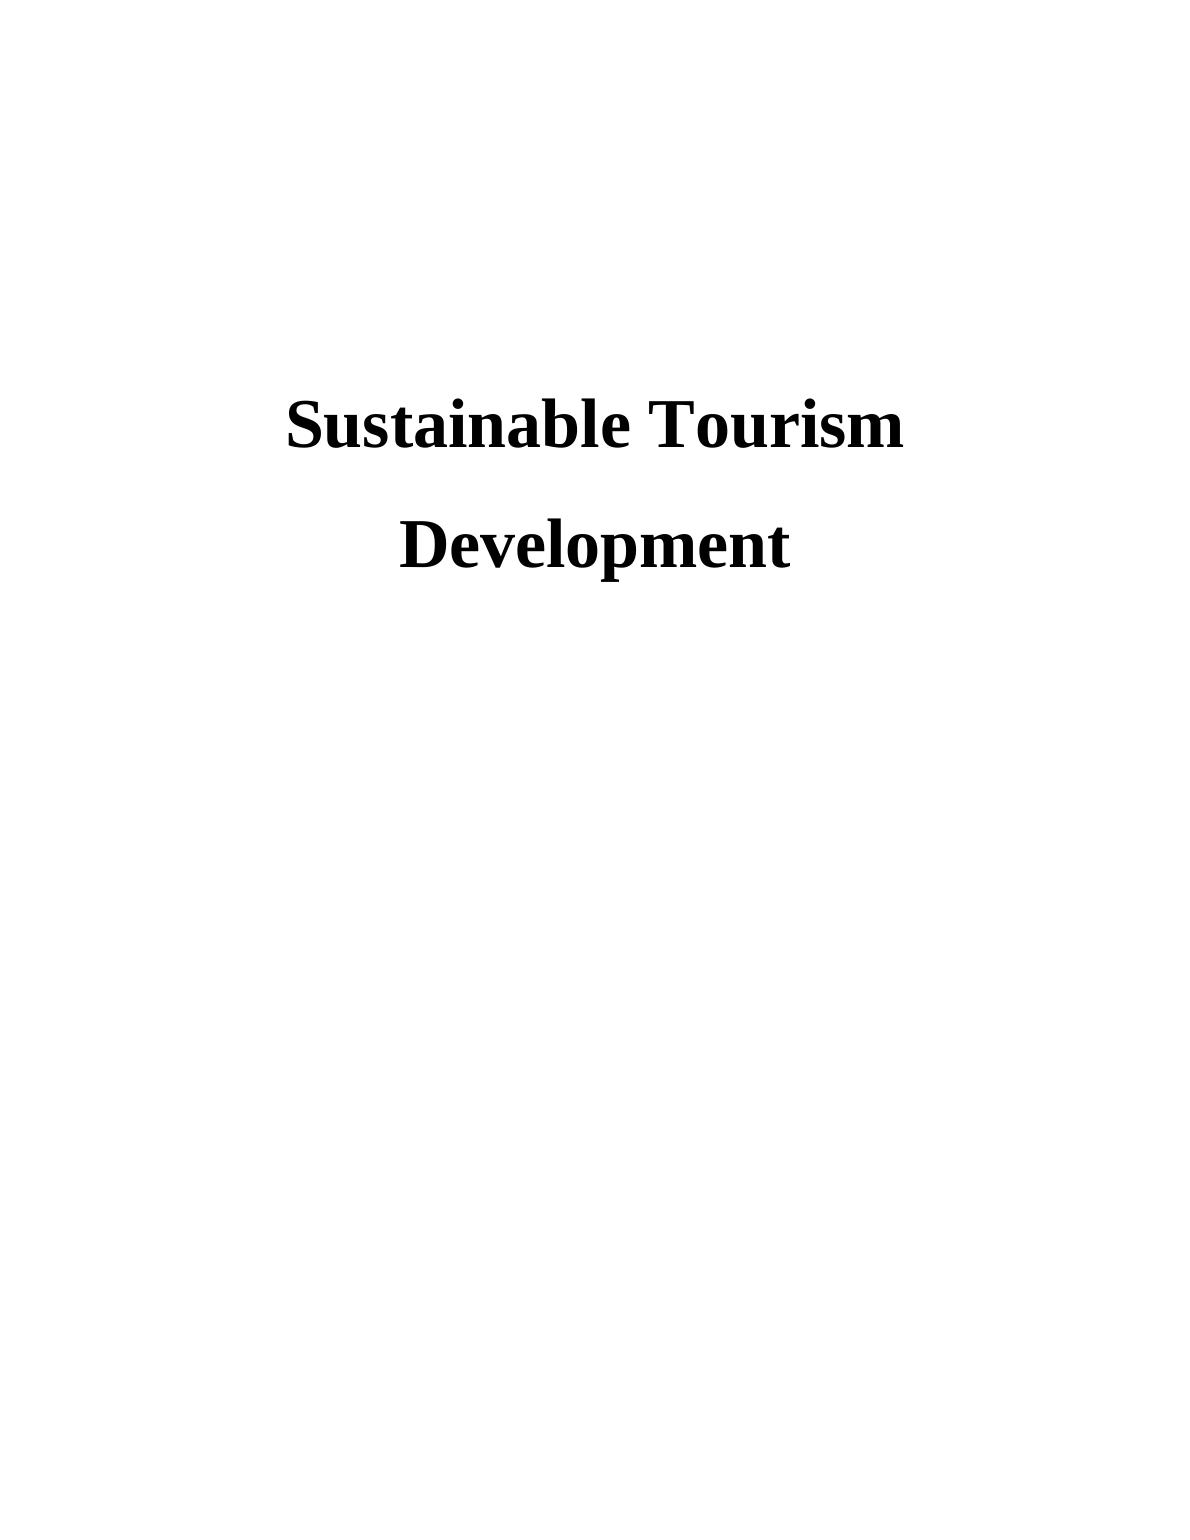 Sustainable Tourism Development  : Advantages and Disadvantages_1